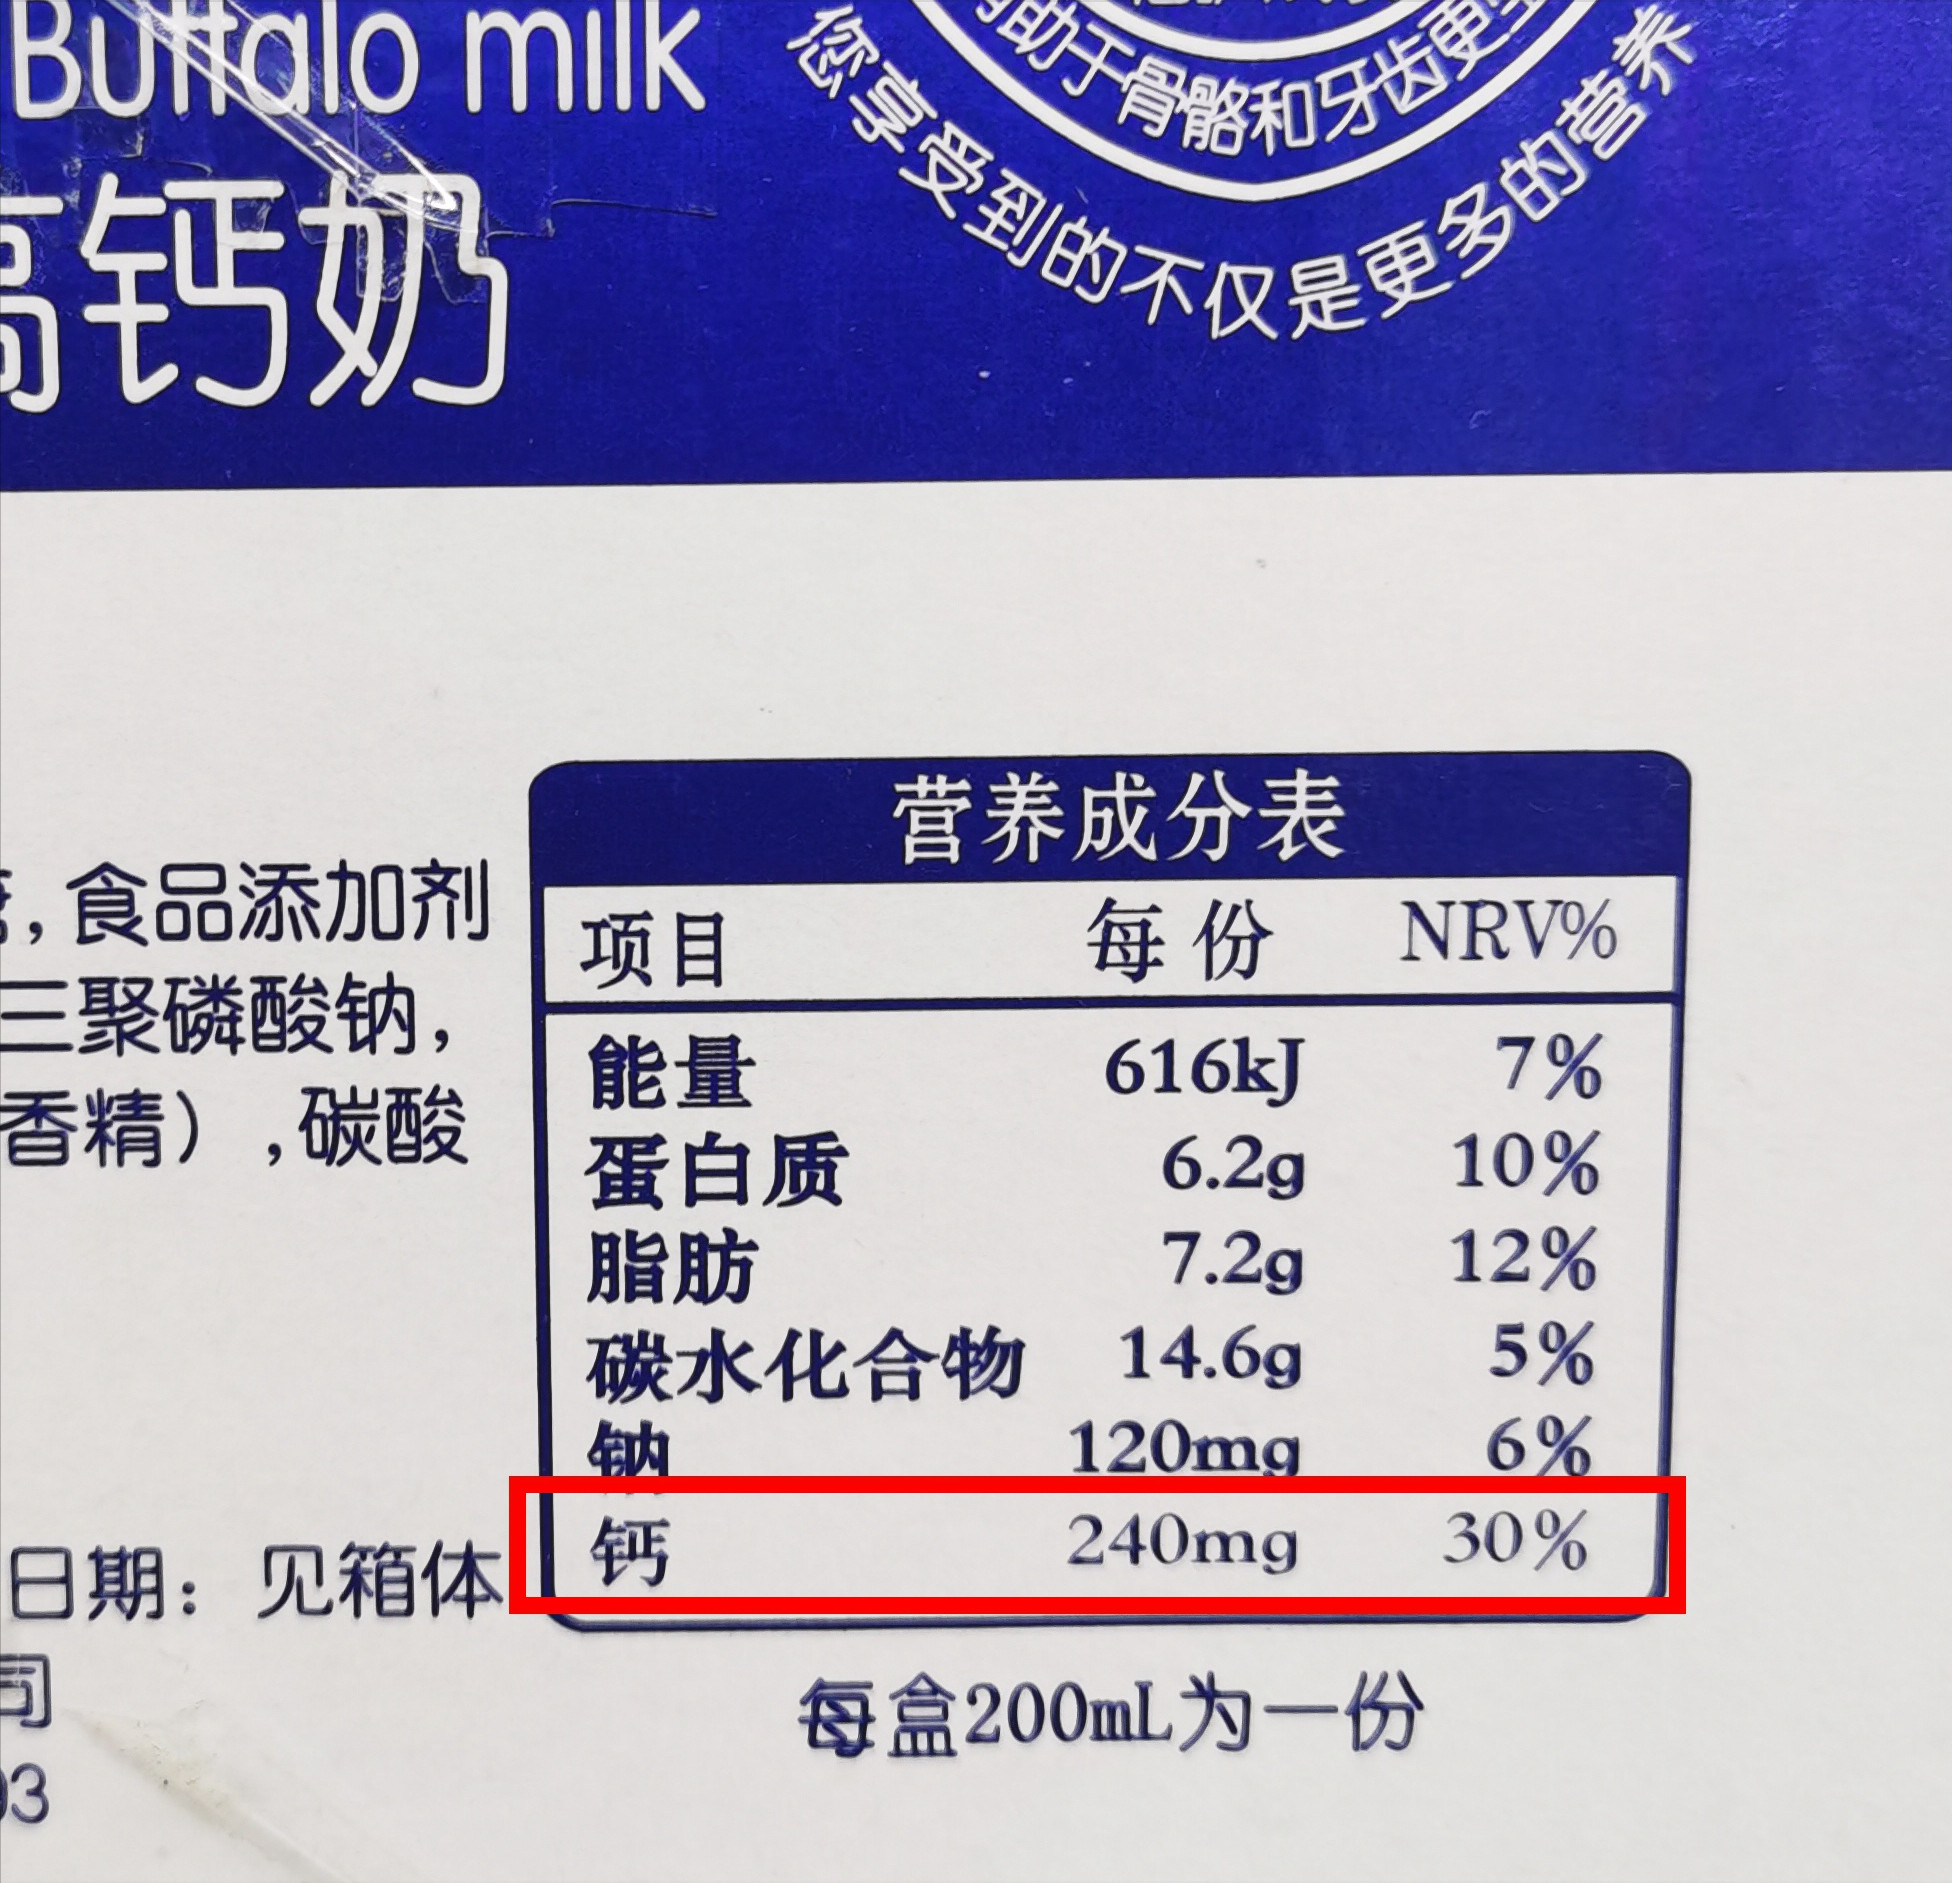 牛奶营养成分表100克图片